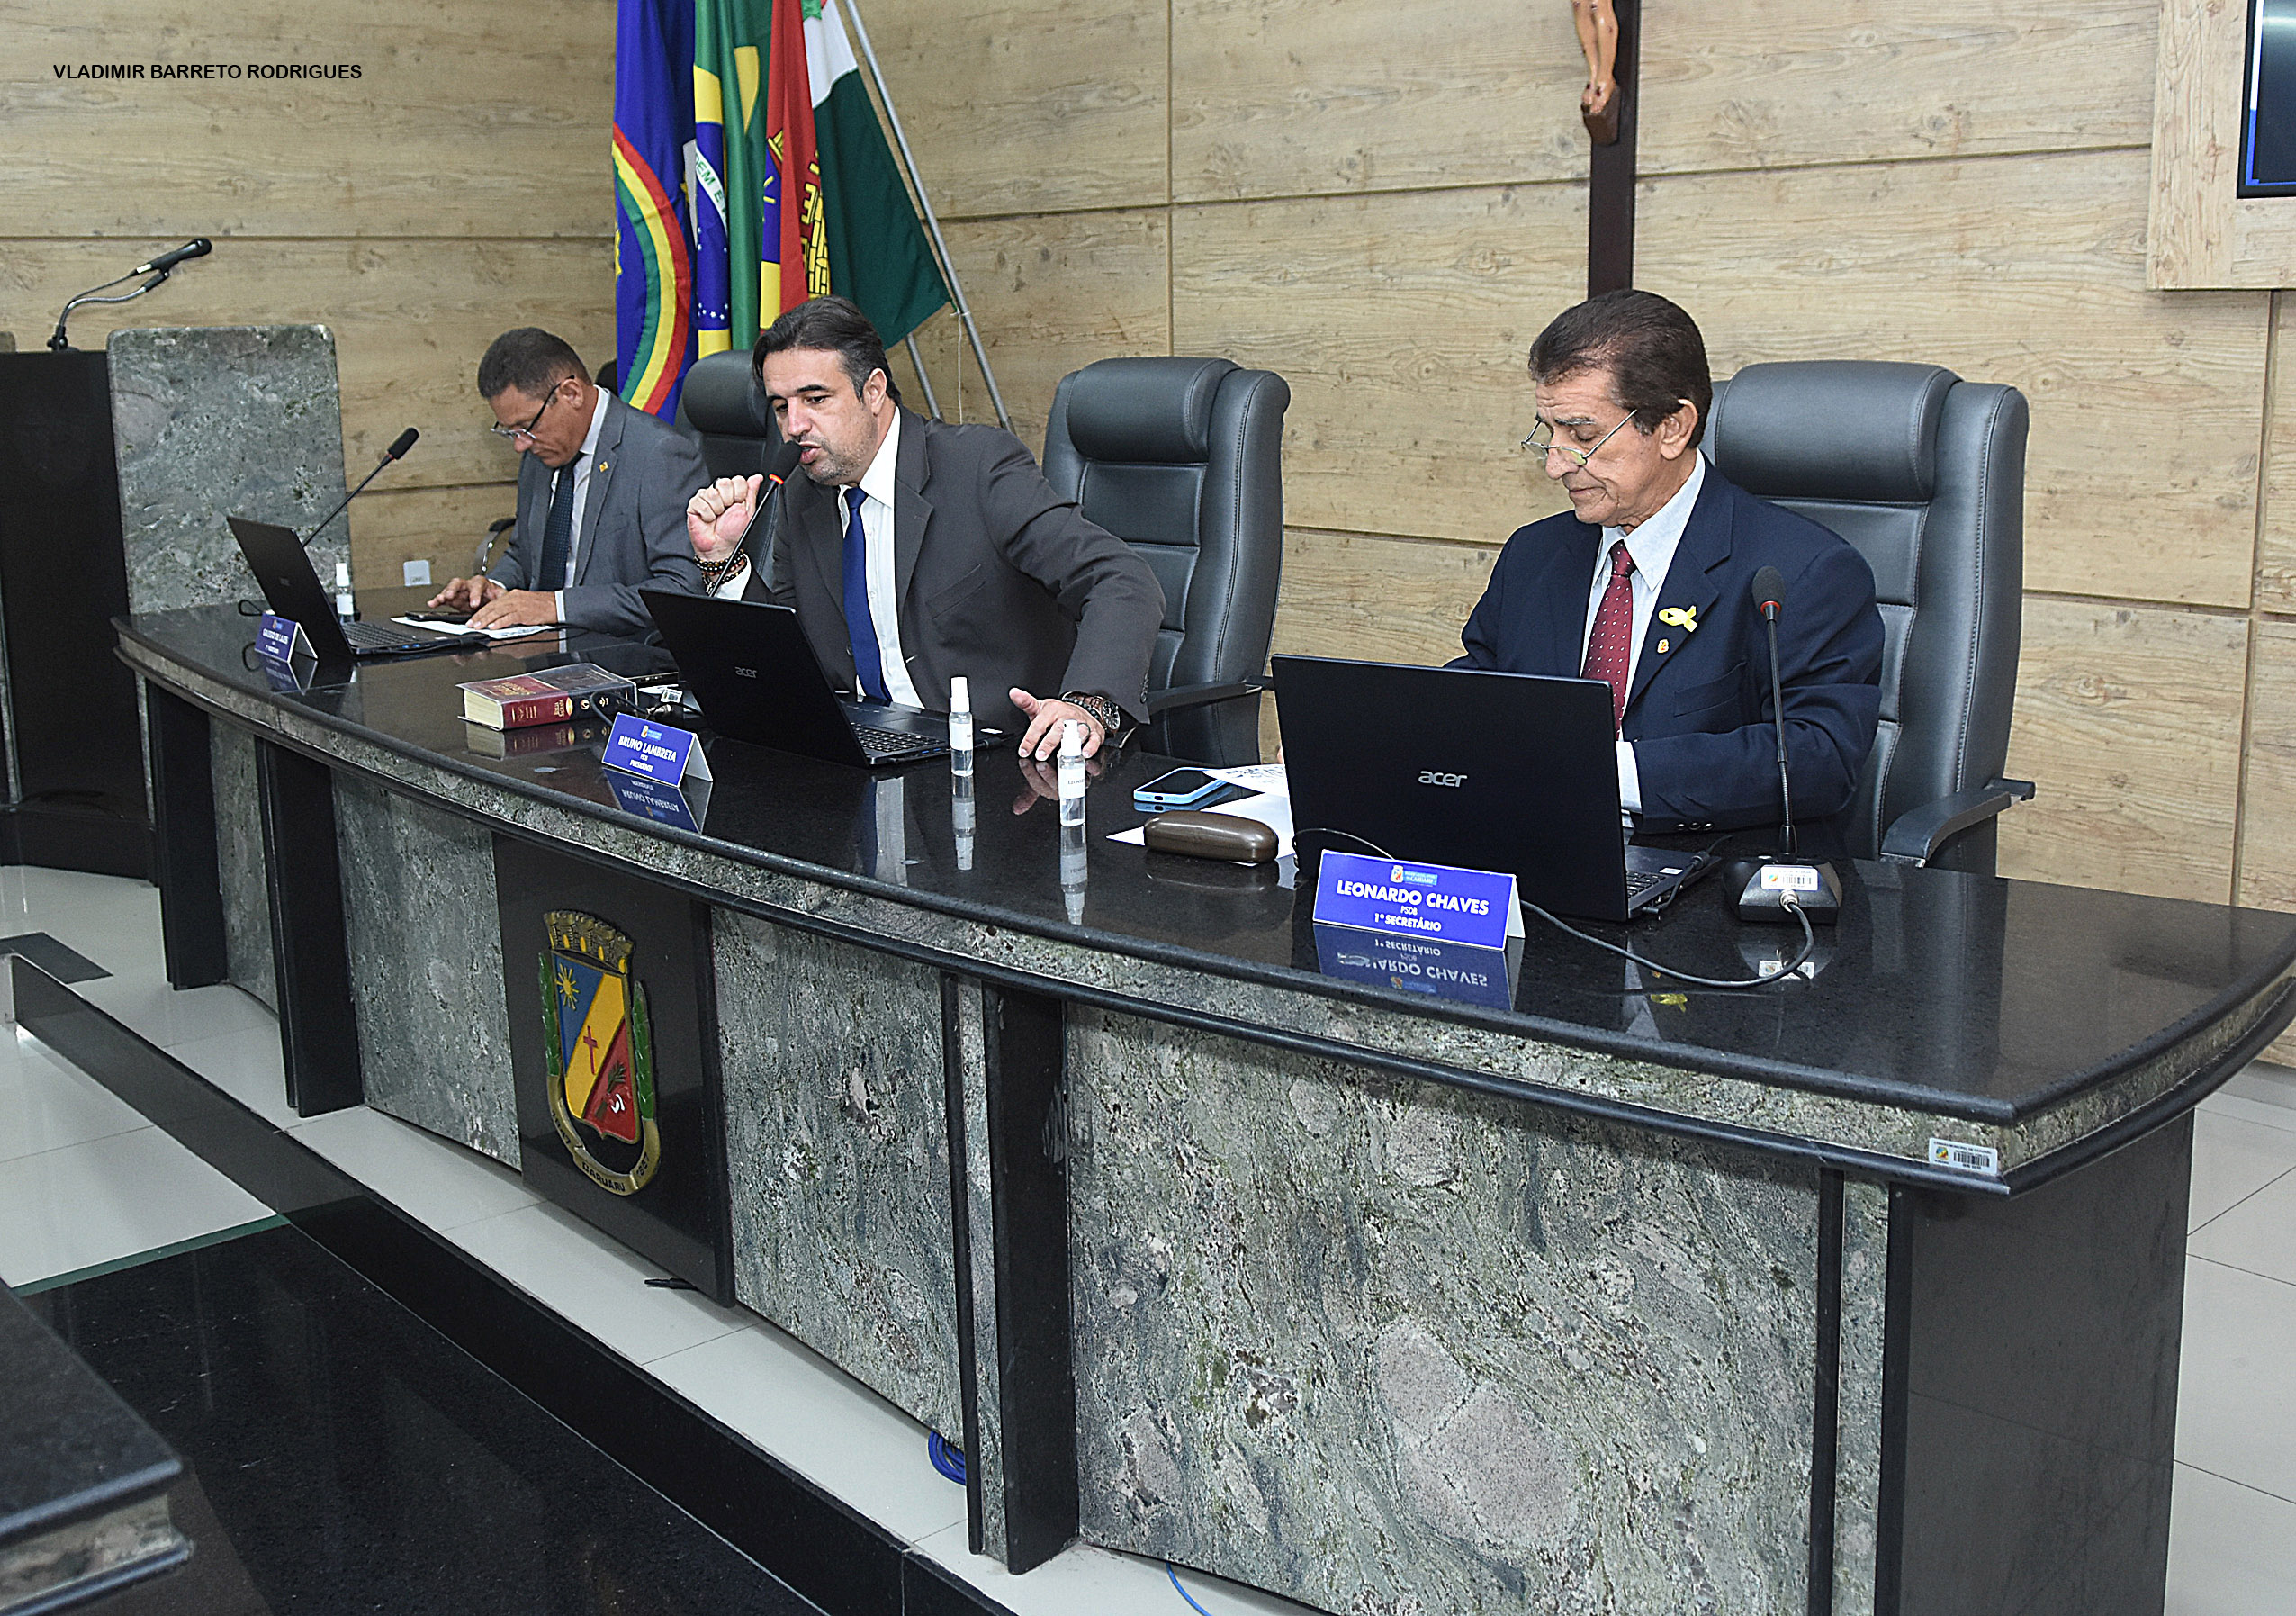 Câmara Municipal debate melhorias para o aeroporto e autódromo de Caruaru e aprova o Refiz